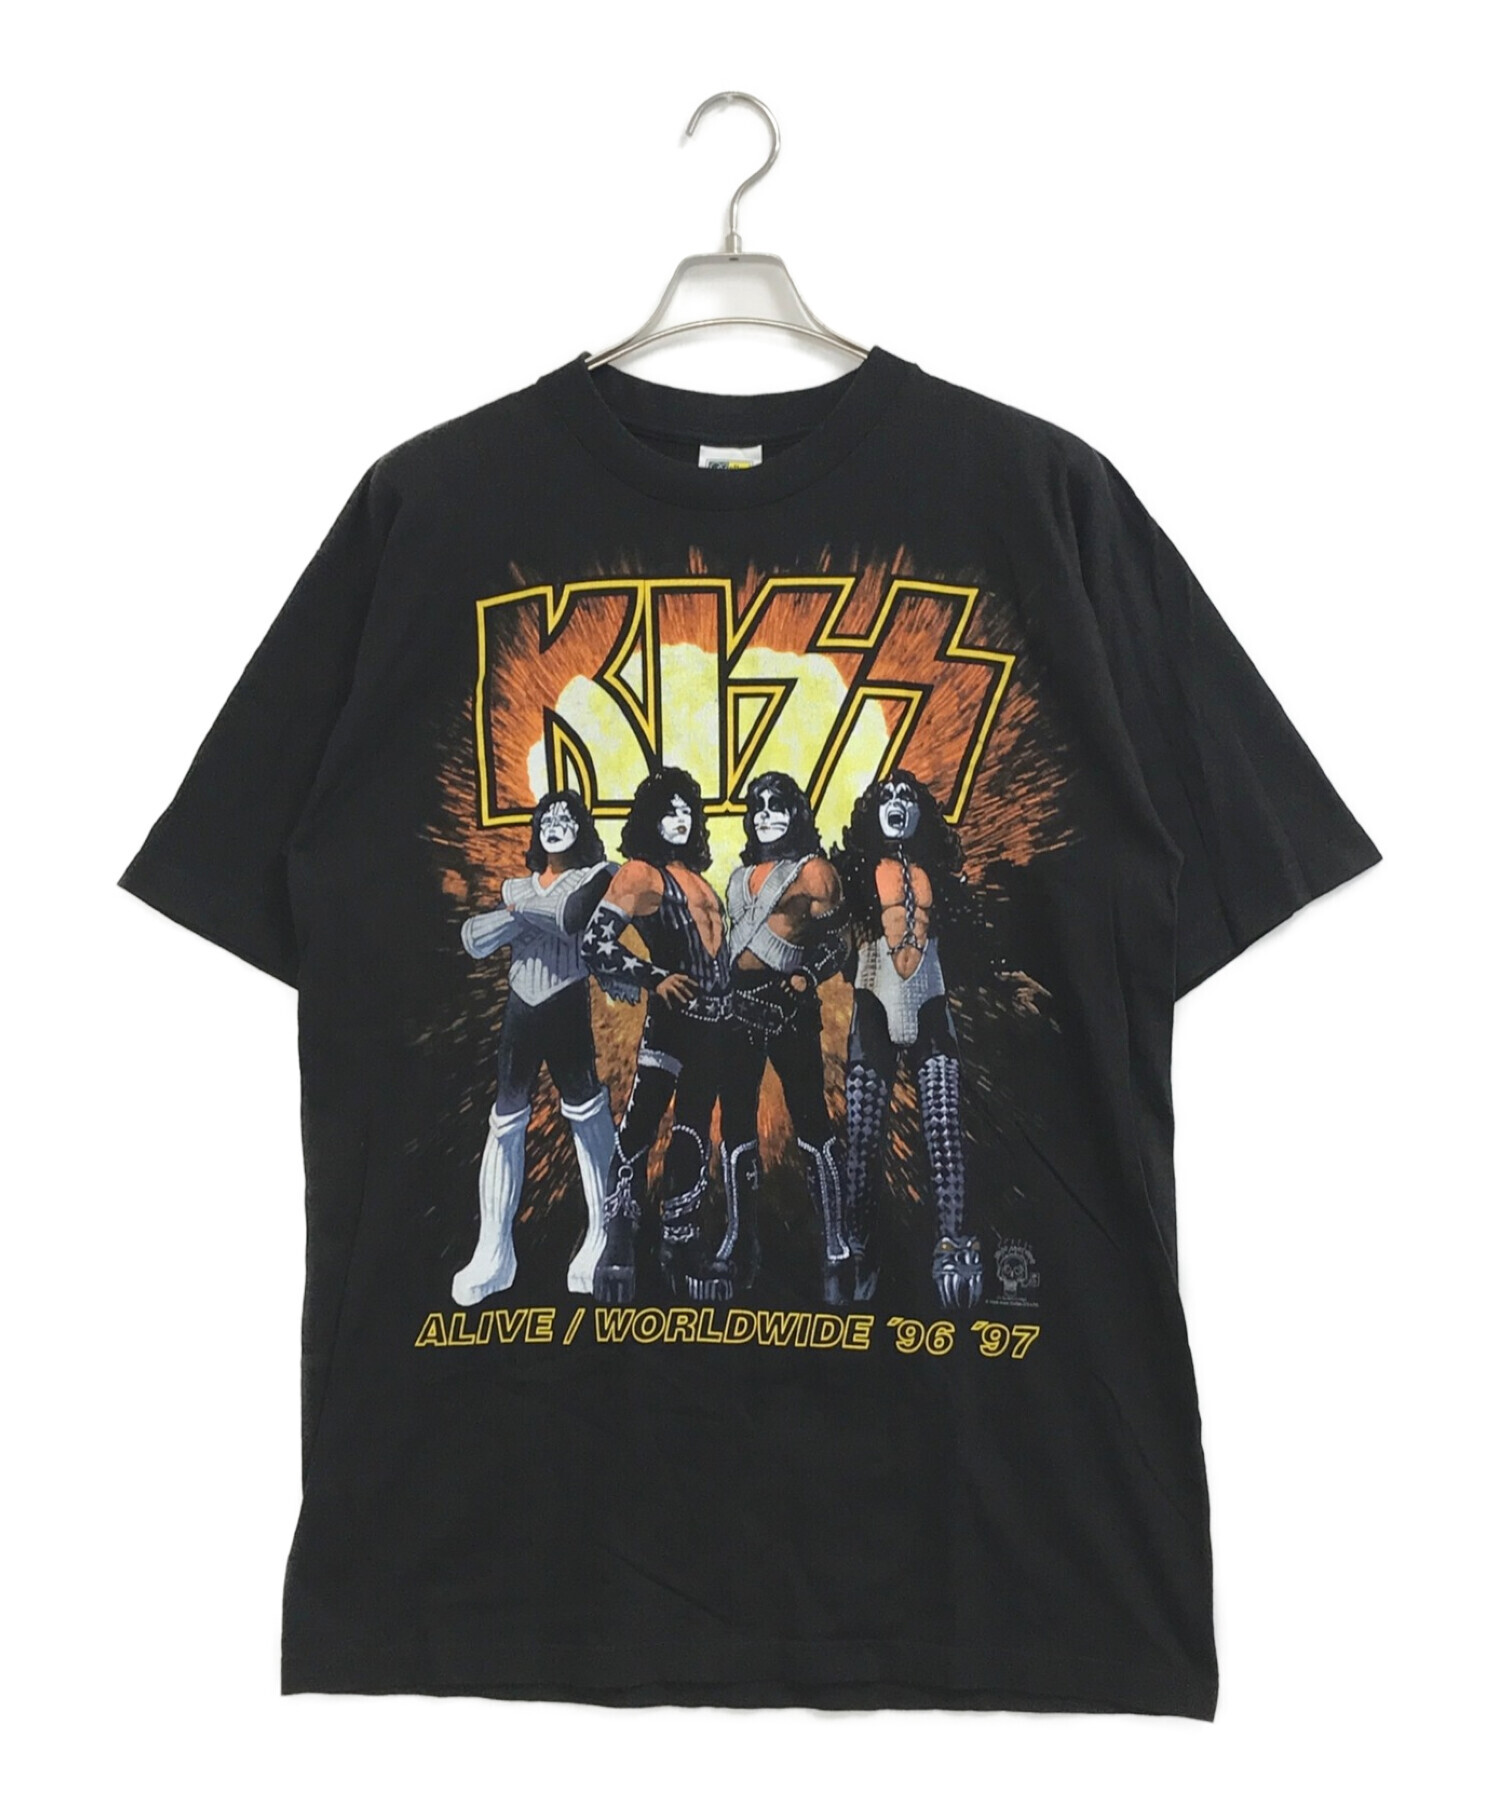 バンドTシャツ (バンドTシャツ) [古着]KISS バンドTシャツ サイズ:XL